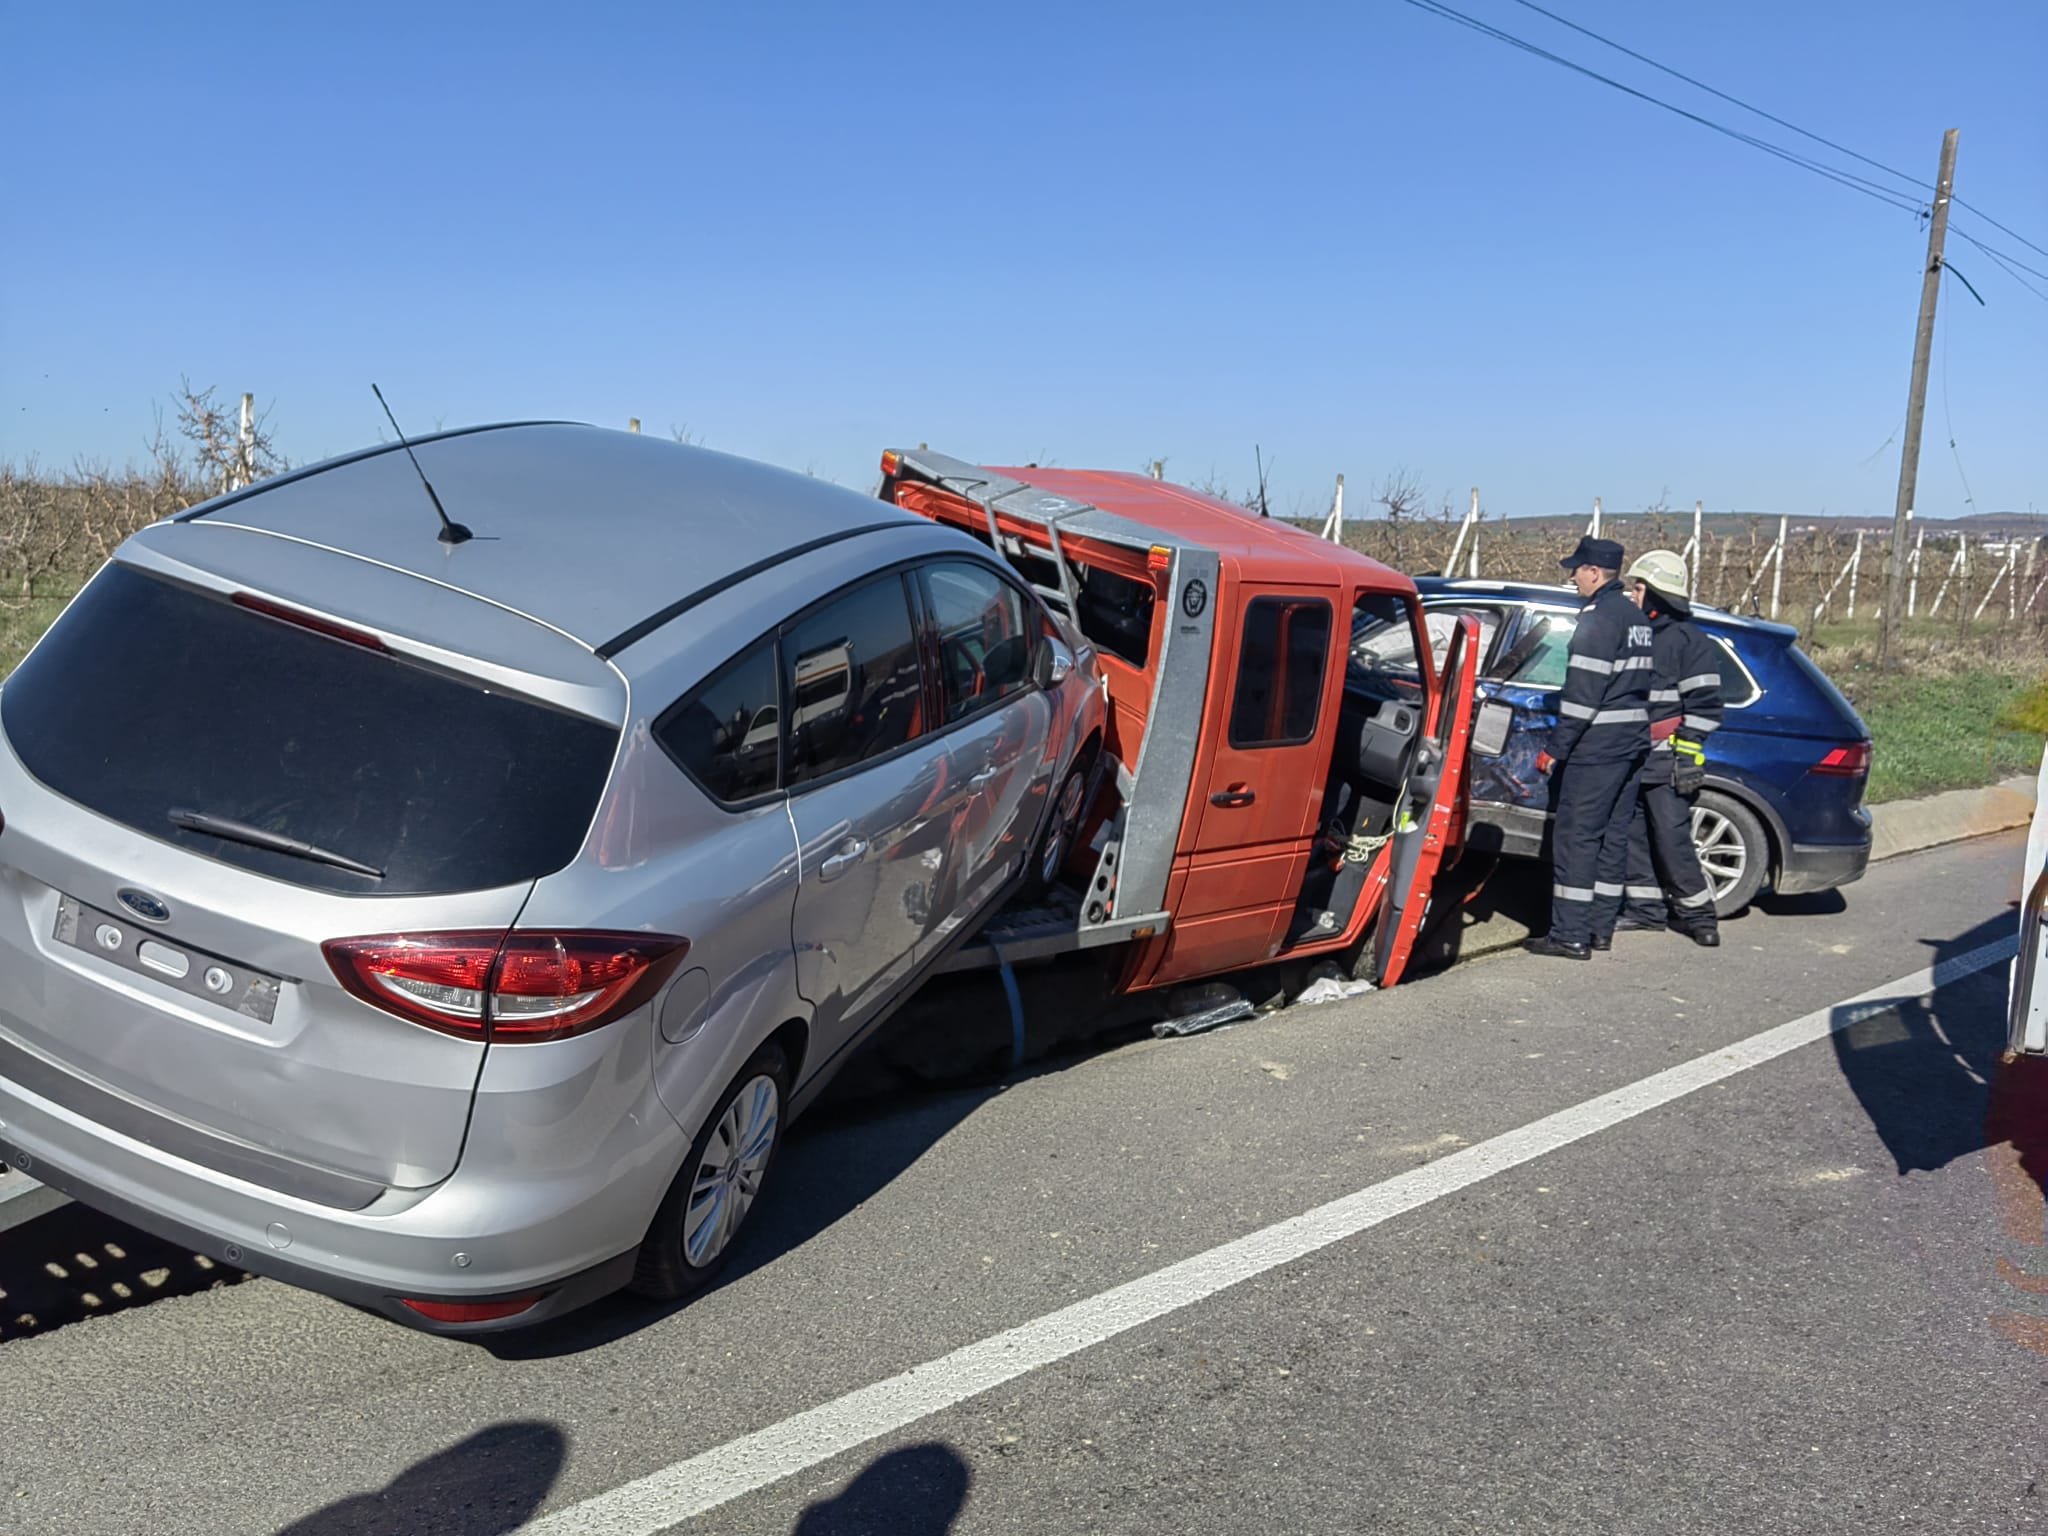  FOTO: Două autoturisme s-au izbit pe drumul morţii, la Mădârjeşti – Bălţaţi